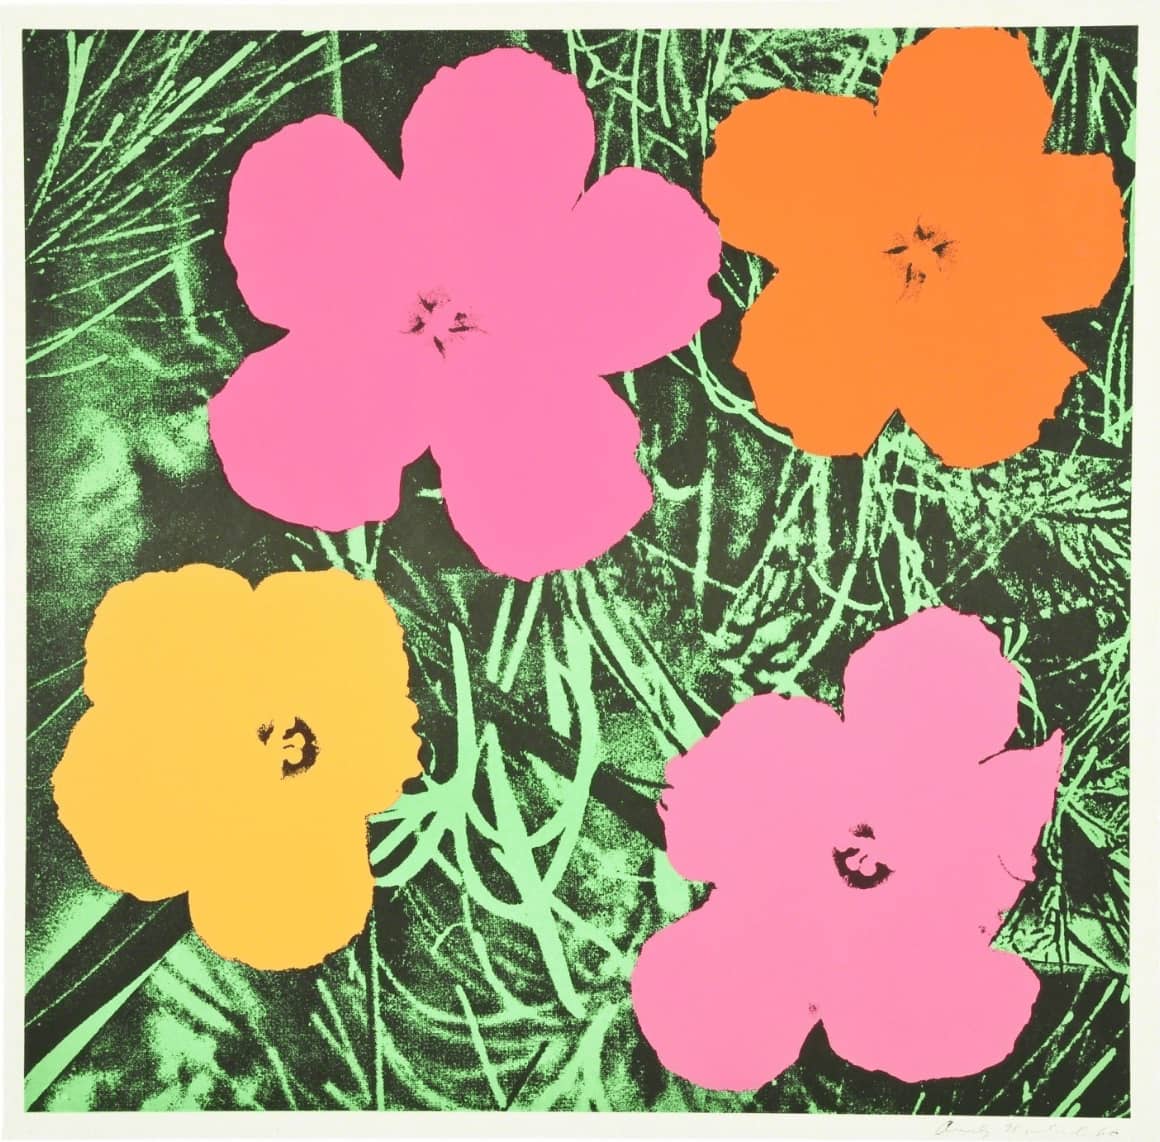 Andy Warhol, Flowers (Feldman & Schellmann II.6), 1964